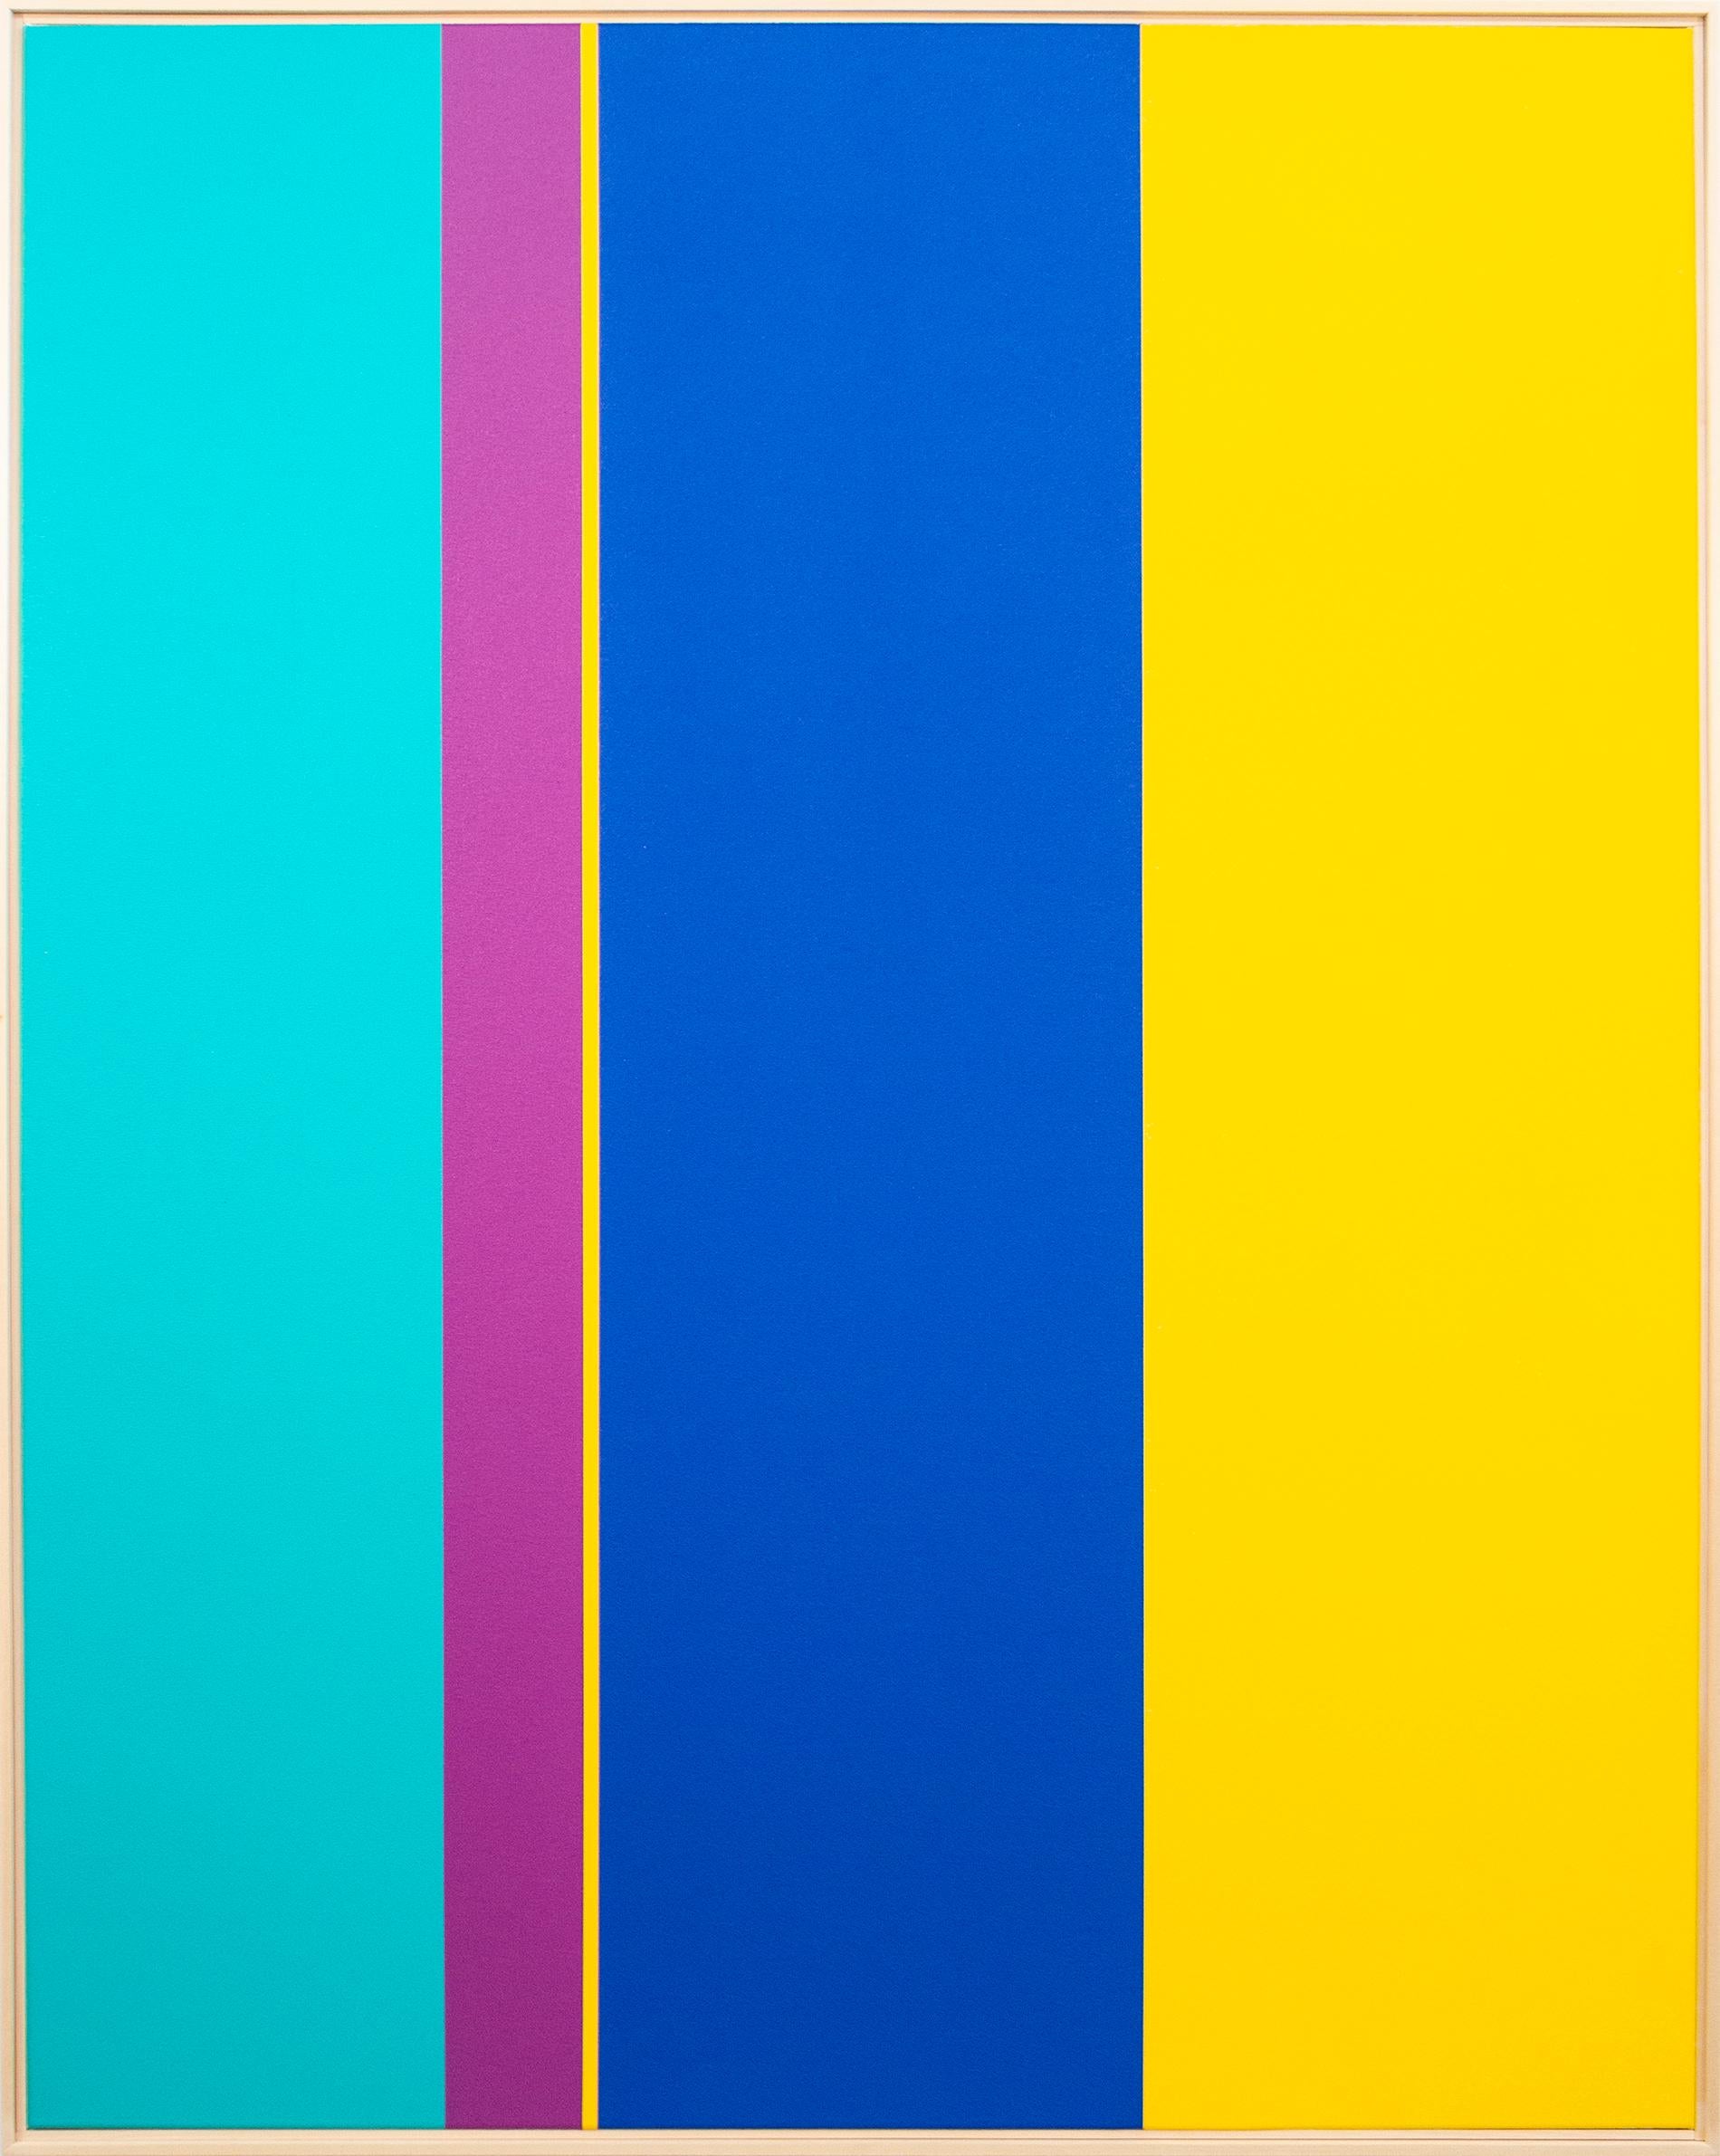 Extension - großes, leuchtendes, farbenfrohes, geometrisches abstraktes Acryl auf Leinwand – Painting von Milly Ristvedt